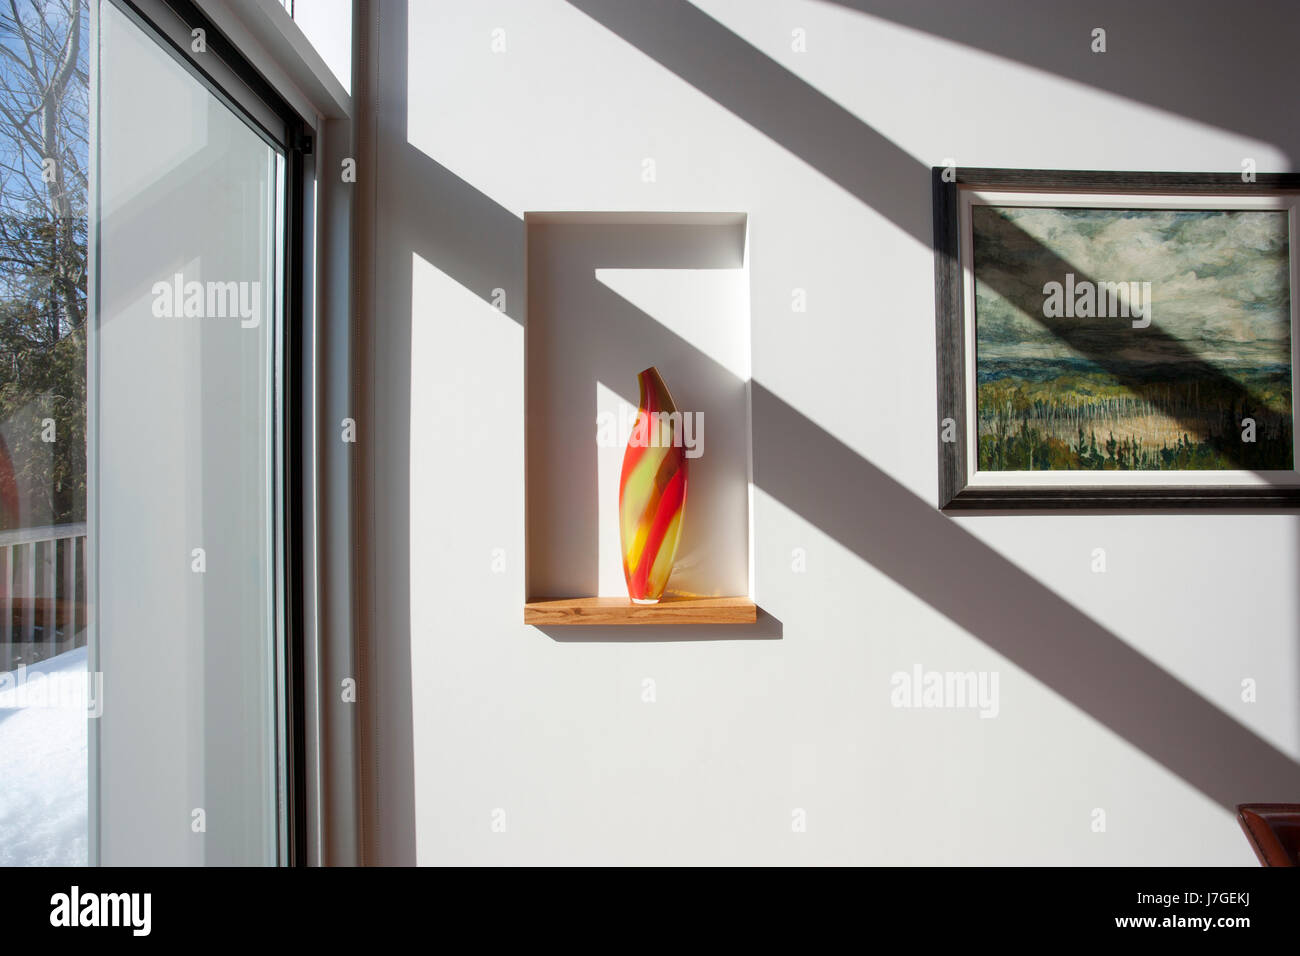 North America, Canada, Ontario, vase in a wall nook Stock Photo